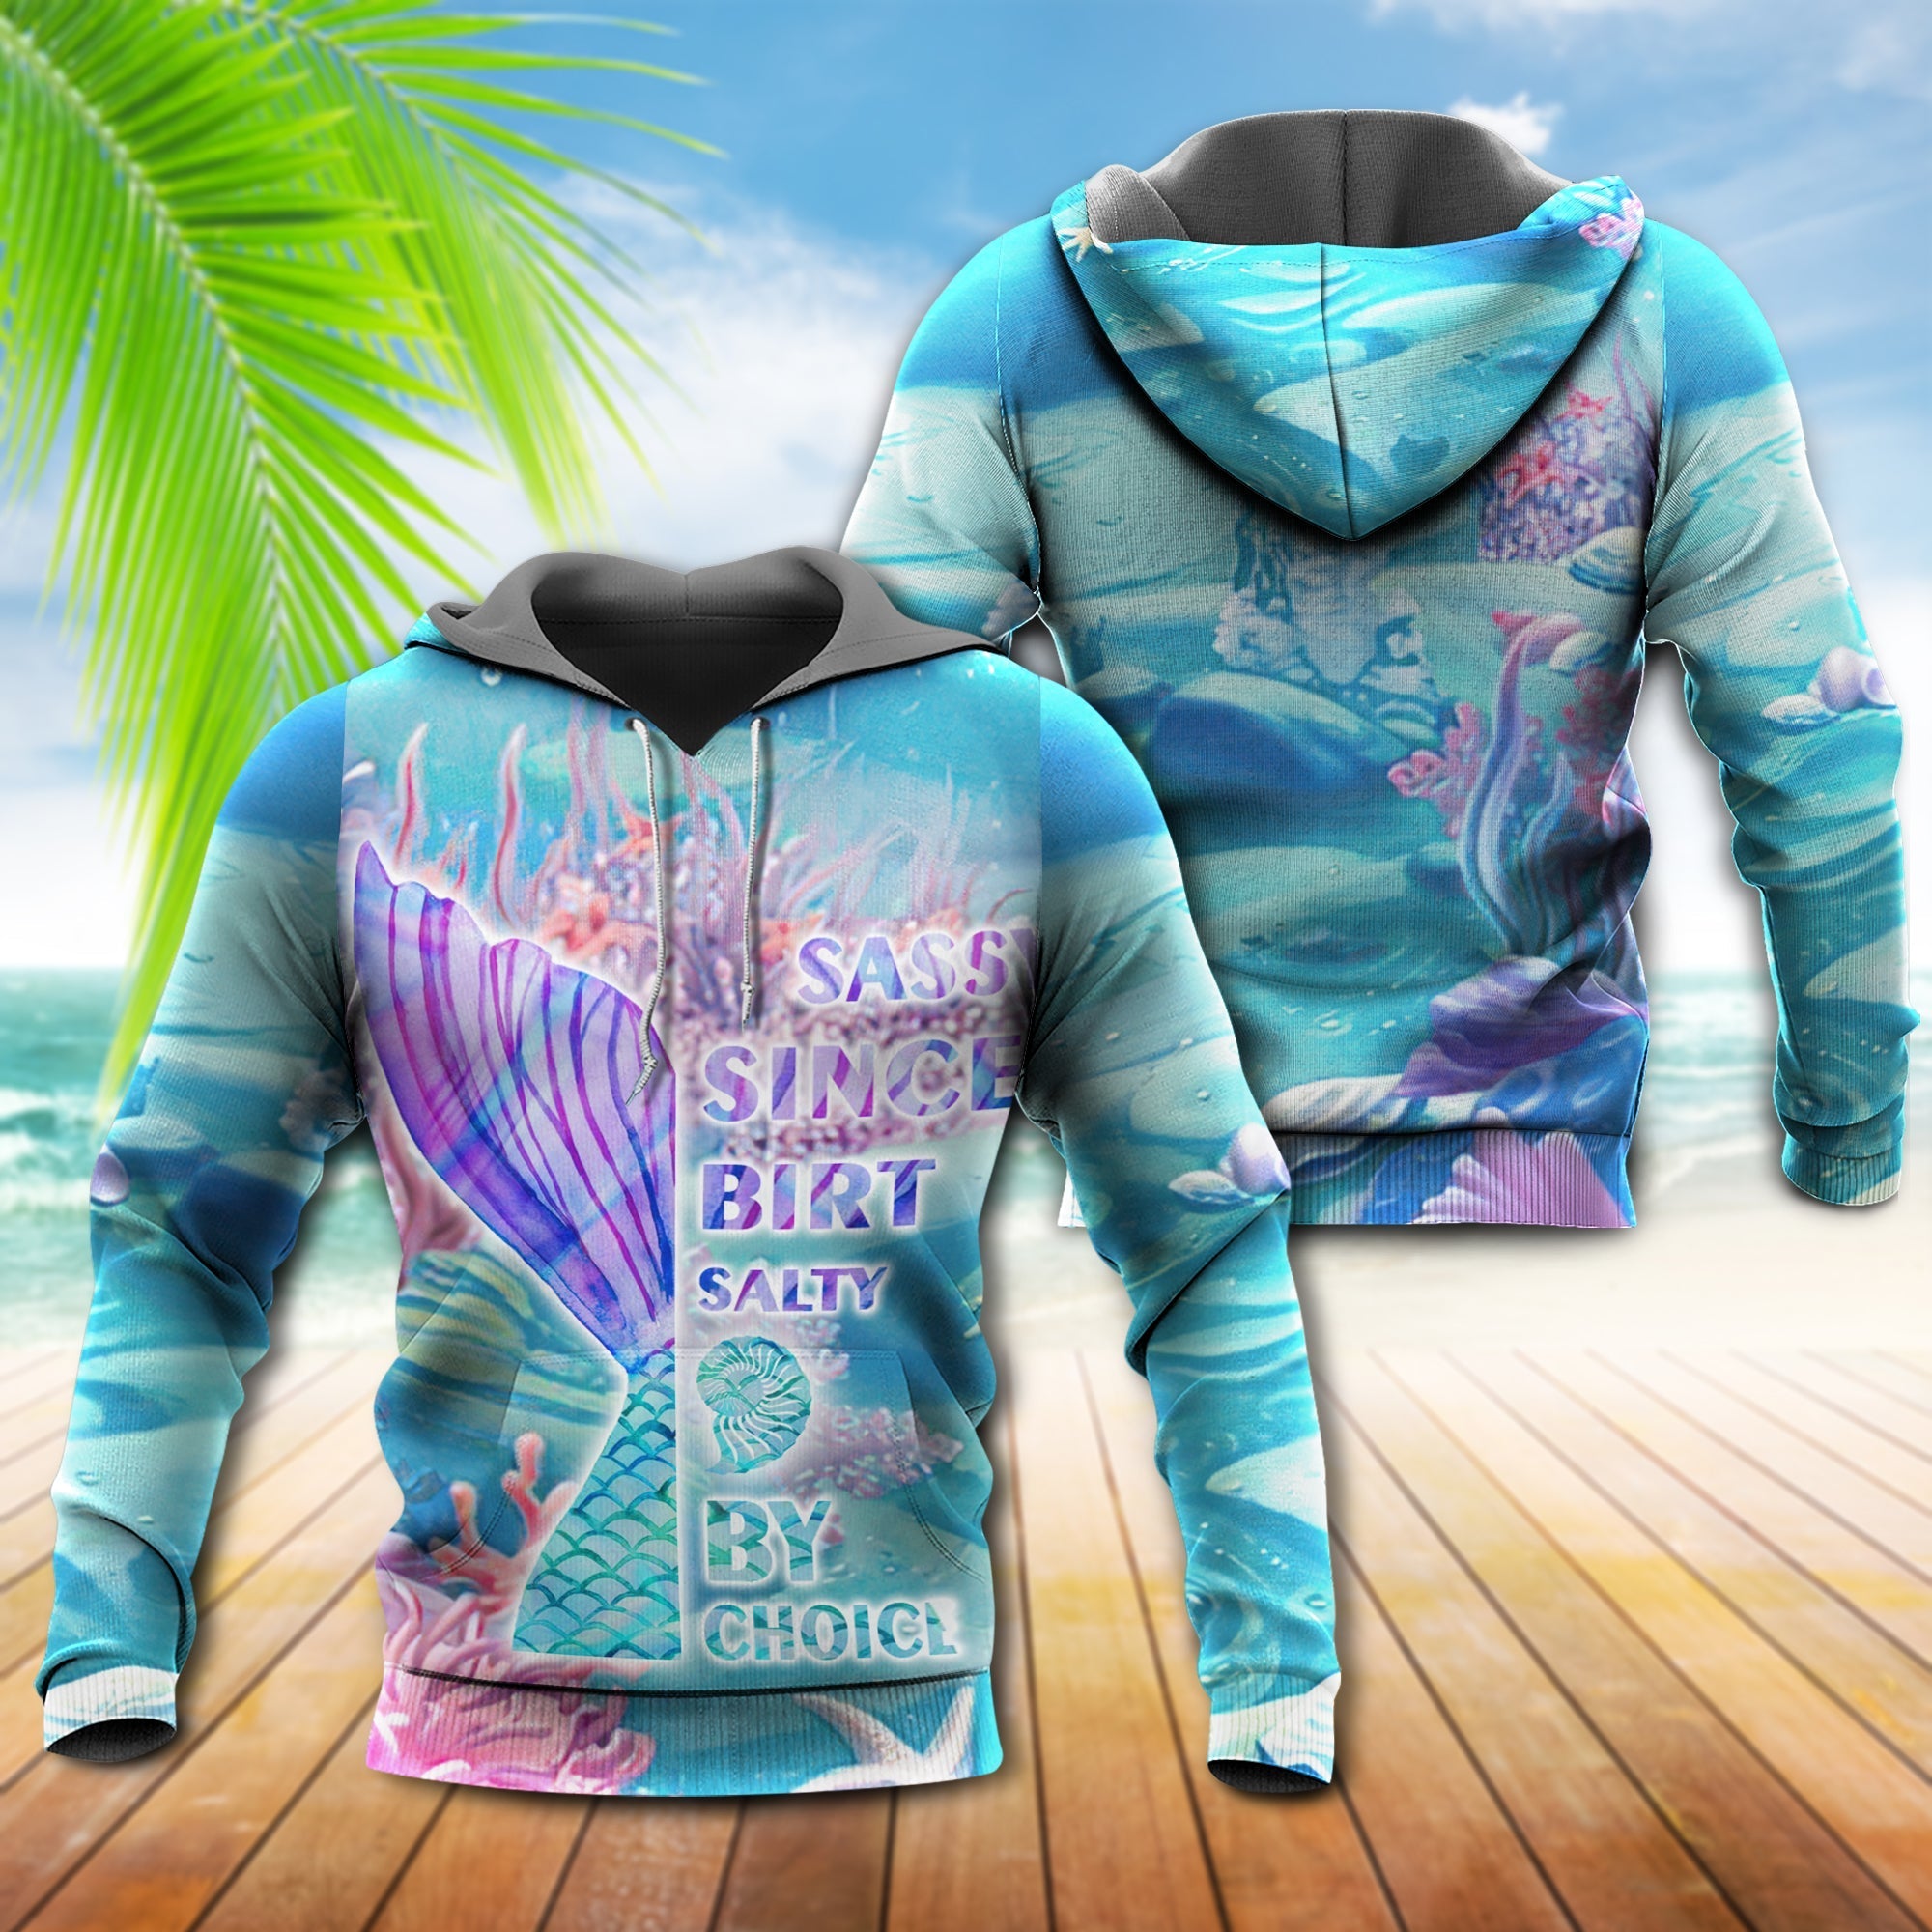 mermaid-loves-ocean-and-sky-line-by-choice-hoodie